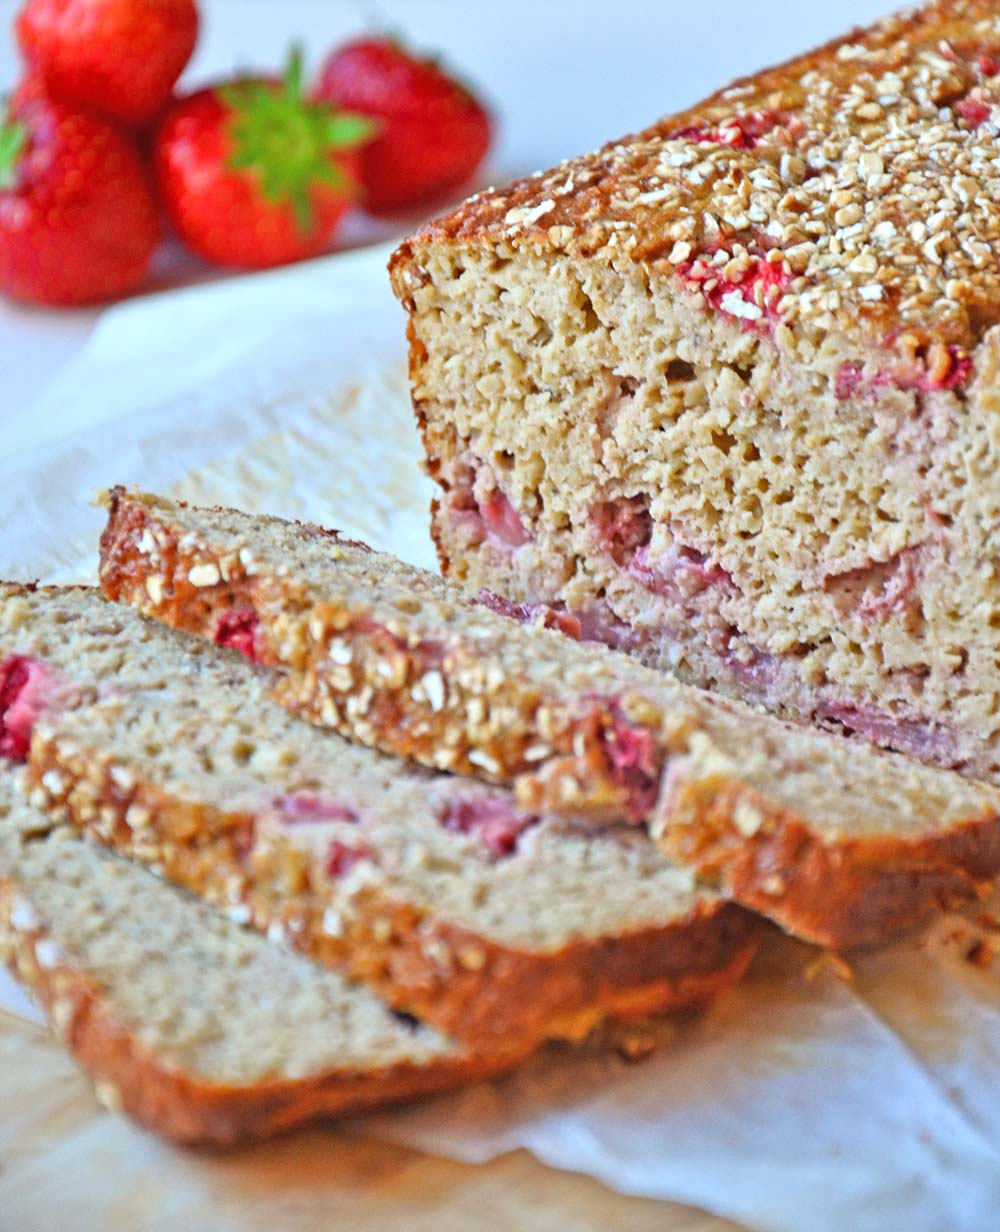 Strawberry banana bread